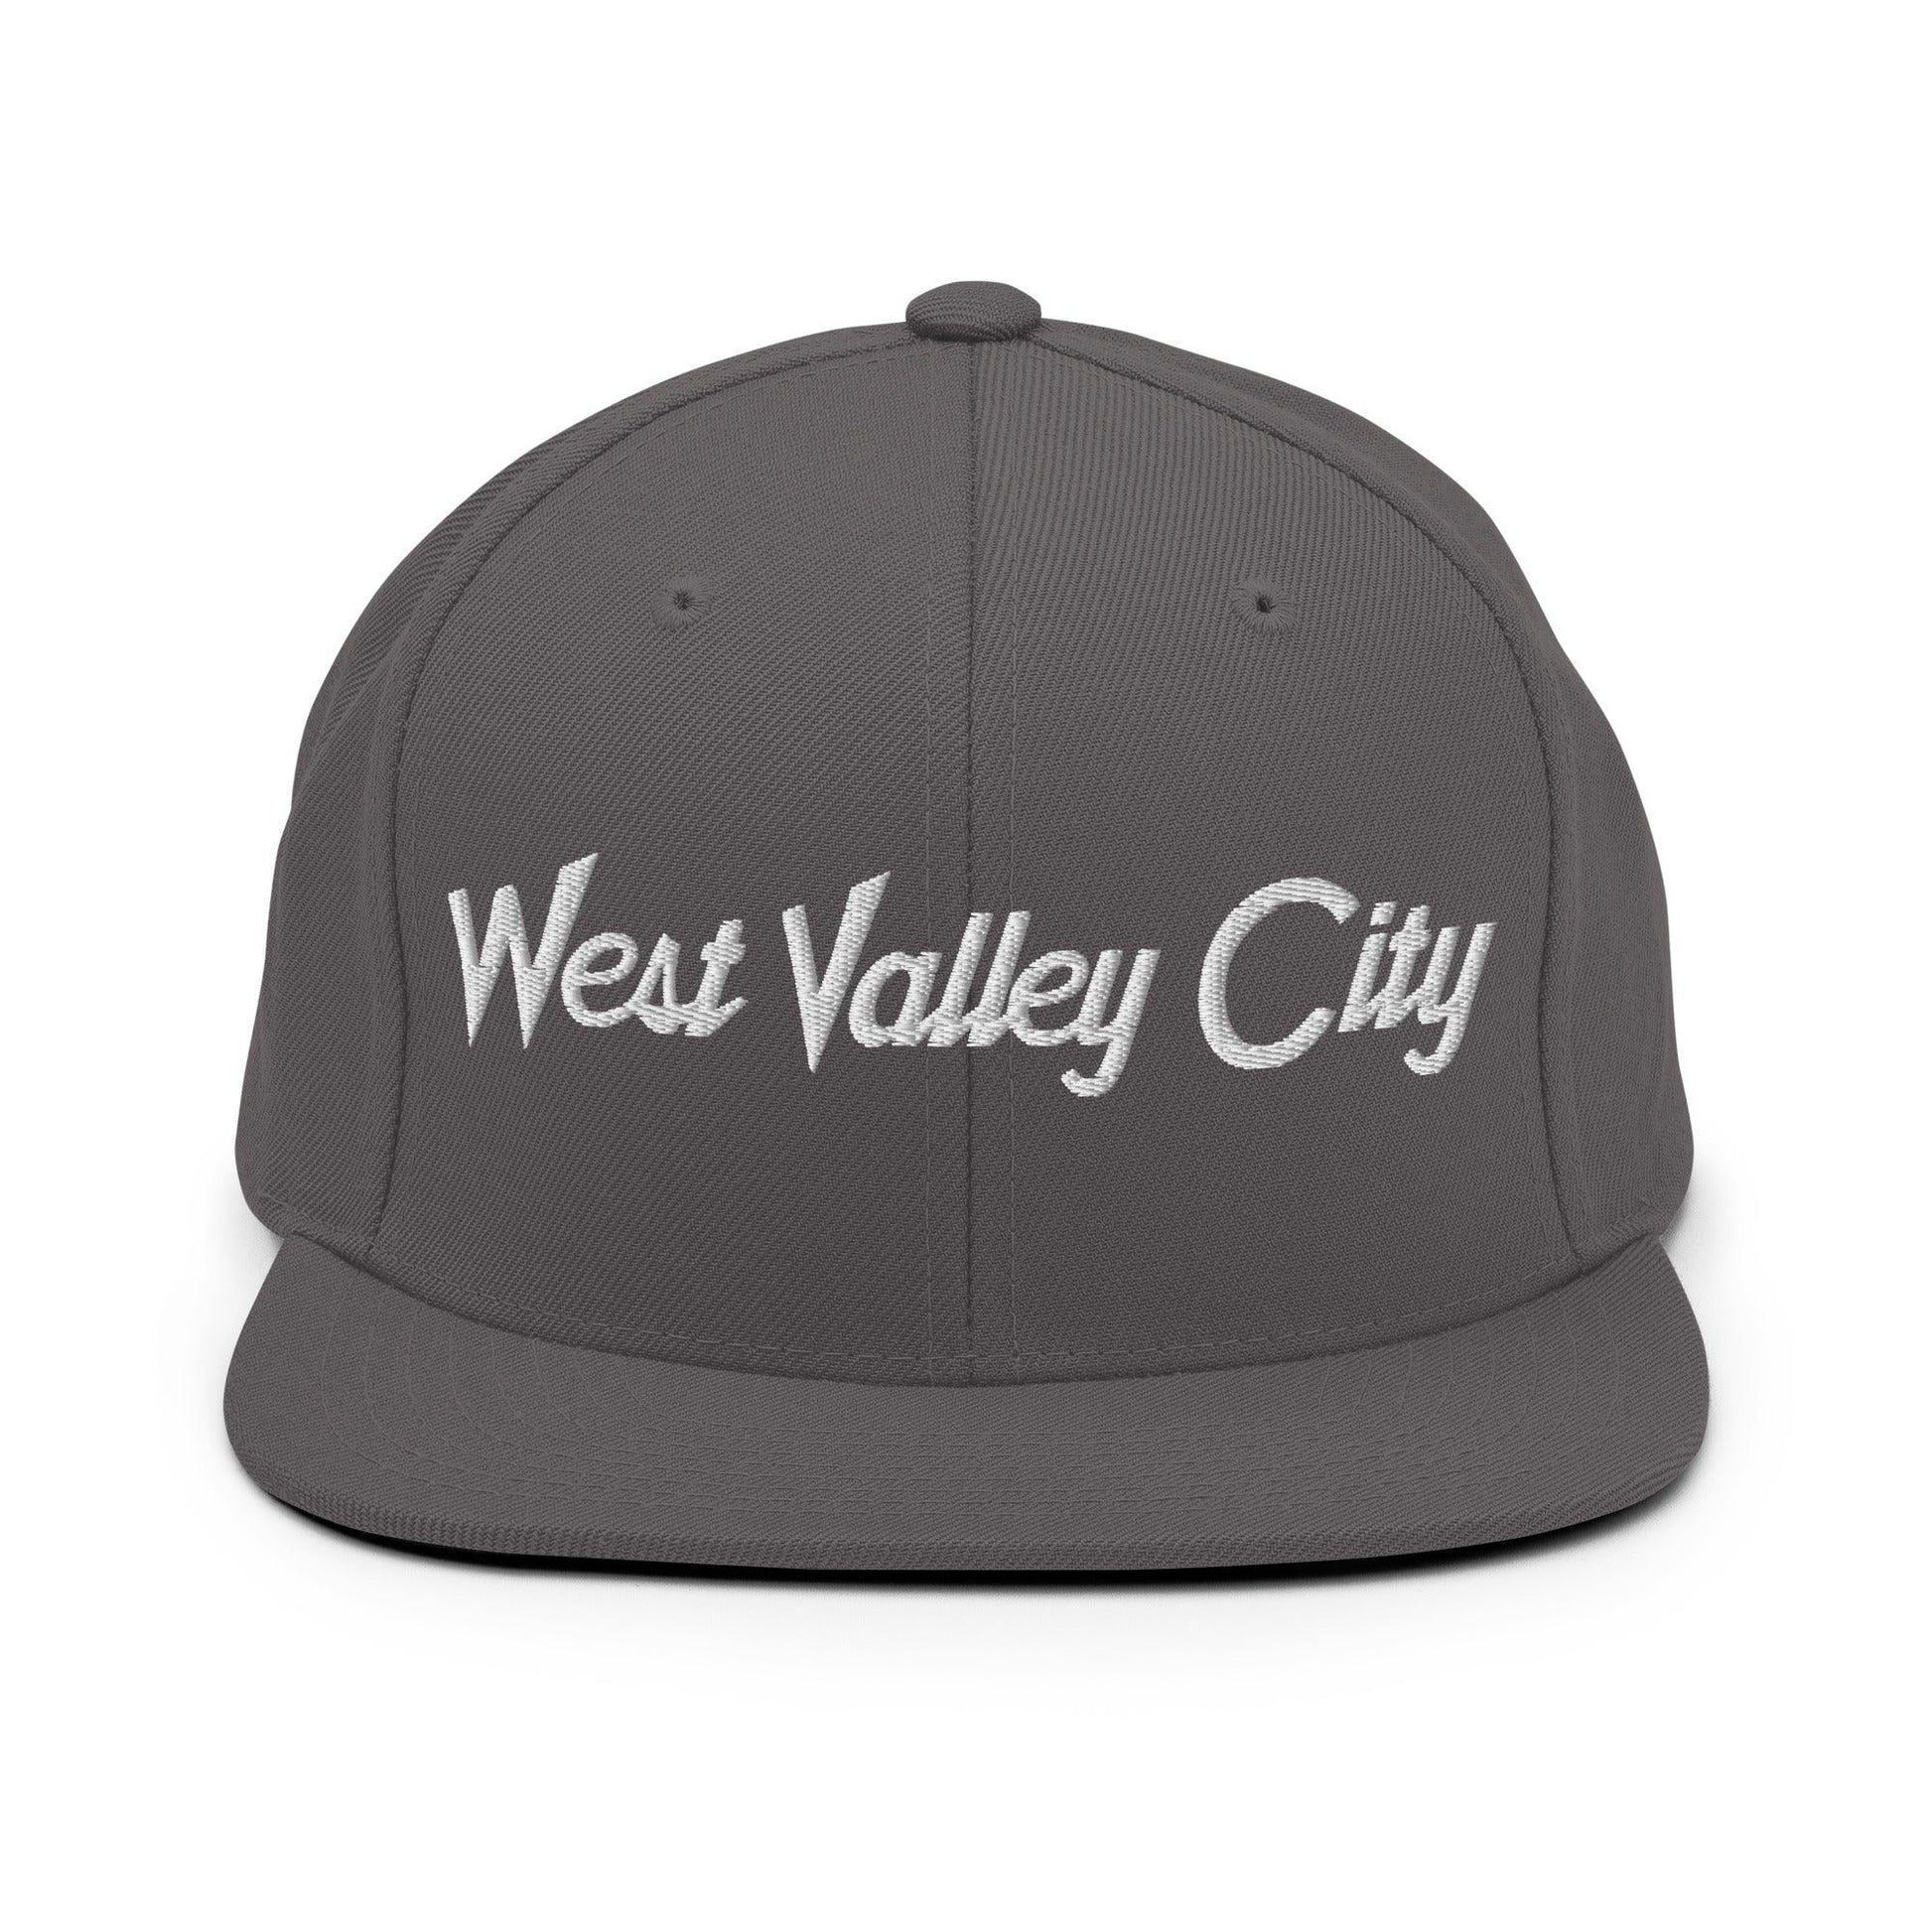 West Valley City Script Snapback Hat Dark Grey